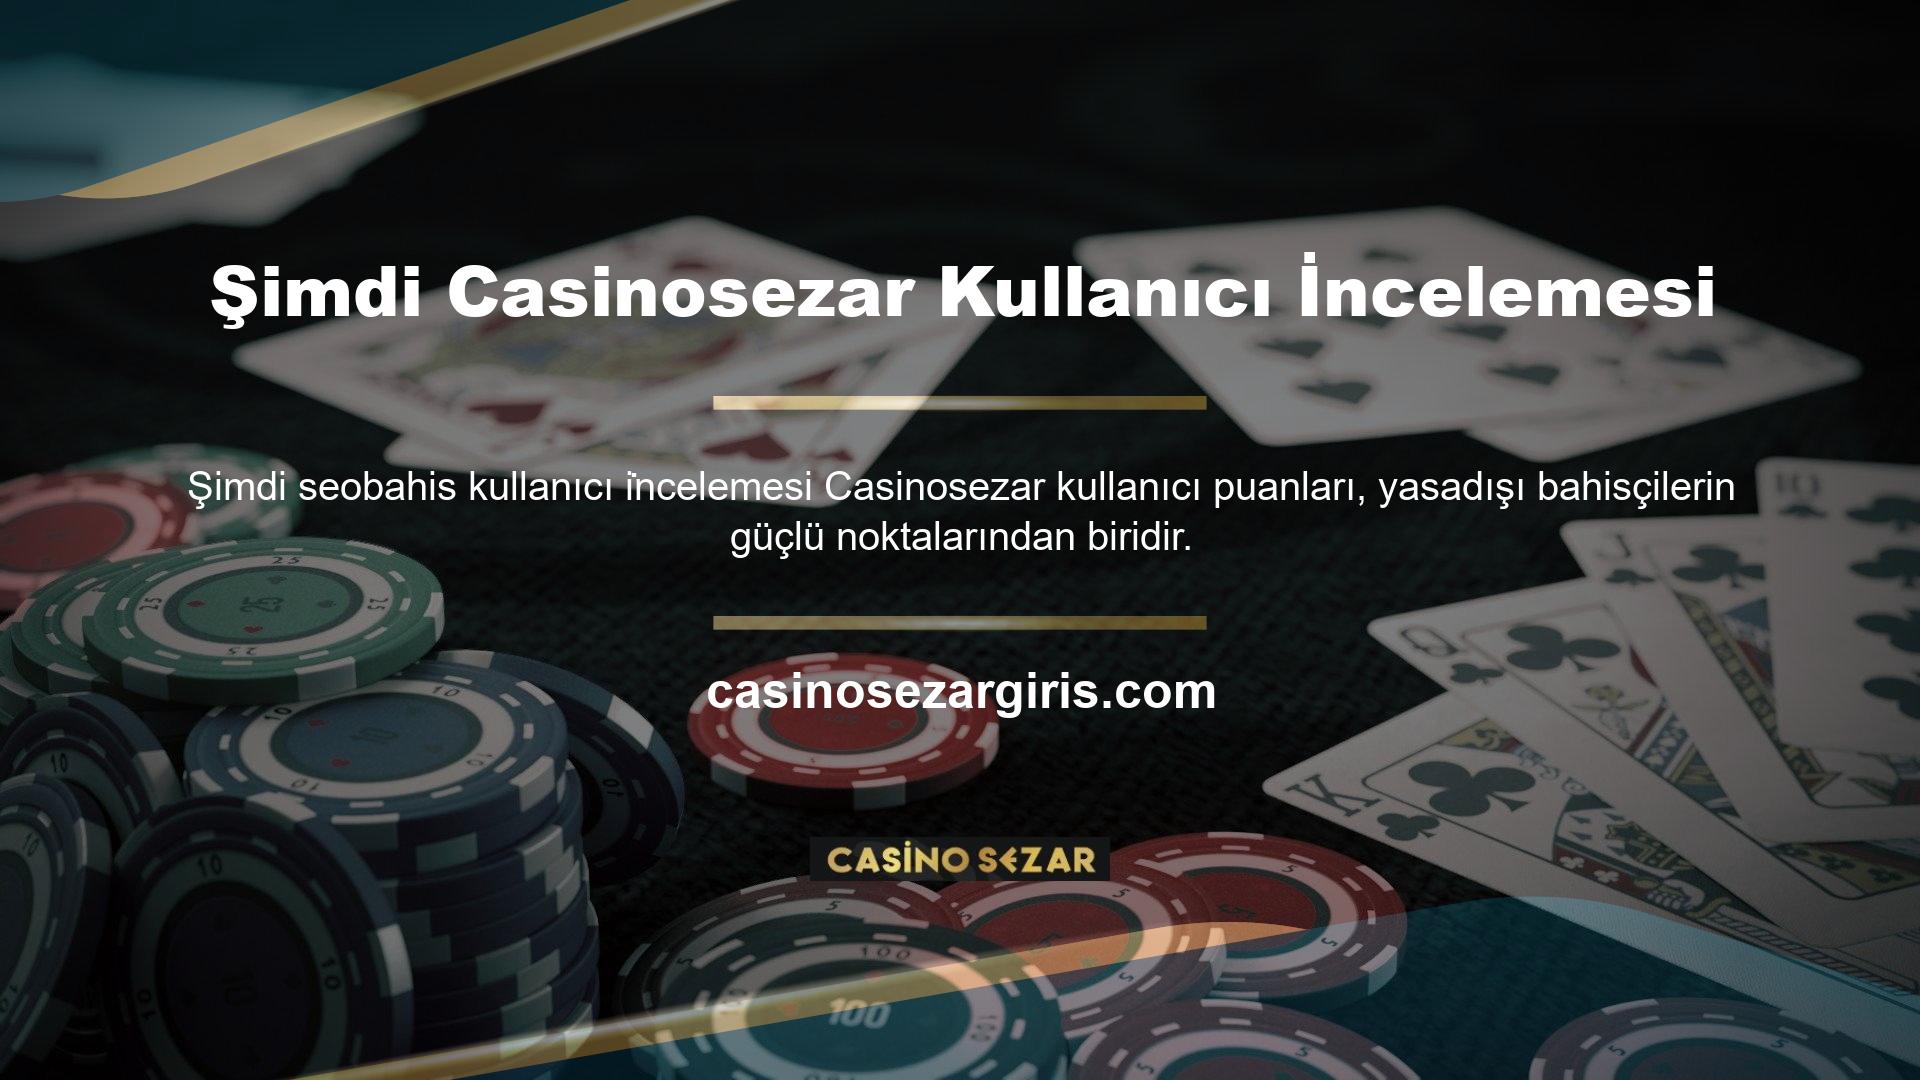 Casinosezar ailesi müşteri merkezlidir ve programını müşteri memnuniyeti üzerine inşa eder, kullanıcı incelemelerinde görülen hem olumlu yönler hem de nüanslar ile kullanıcıları bonuslar ve yüksek ilgi ile memnun eder